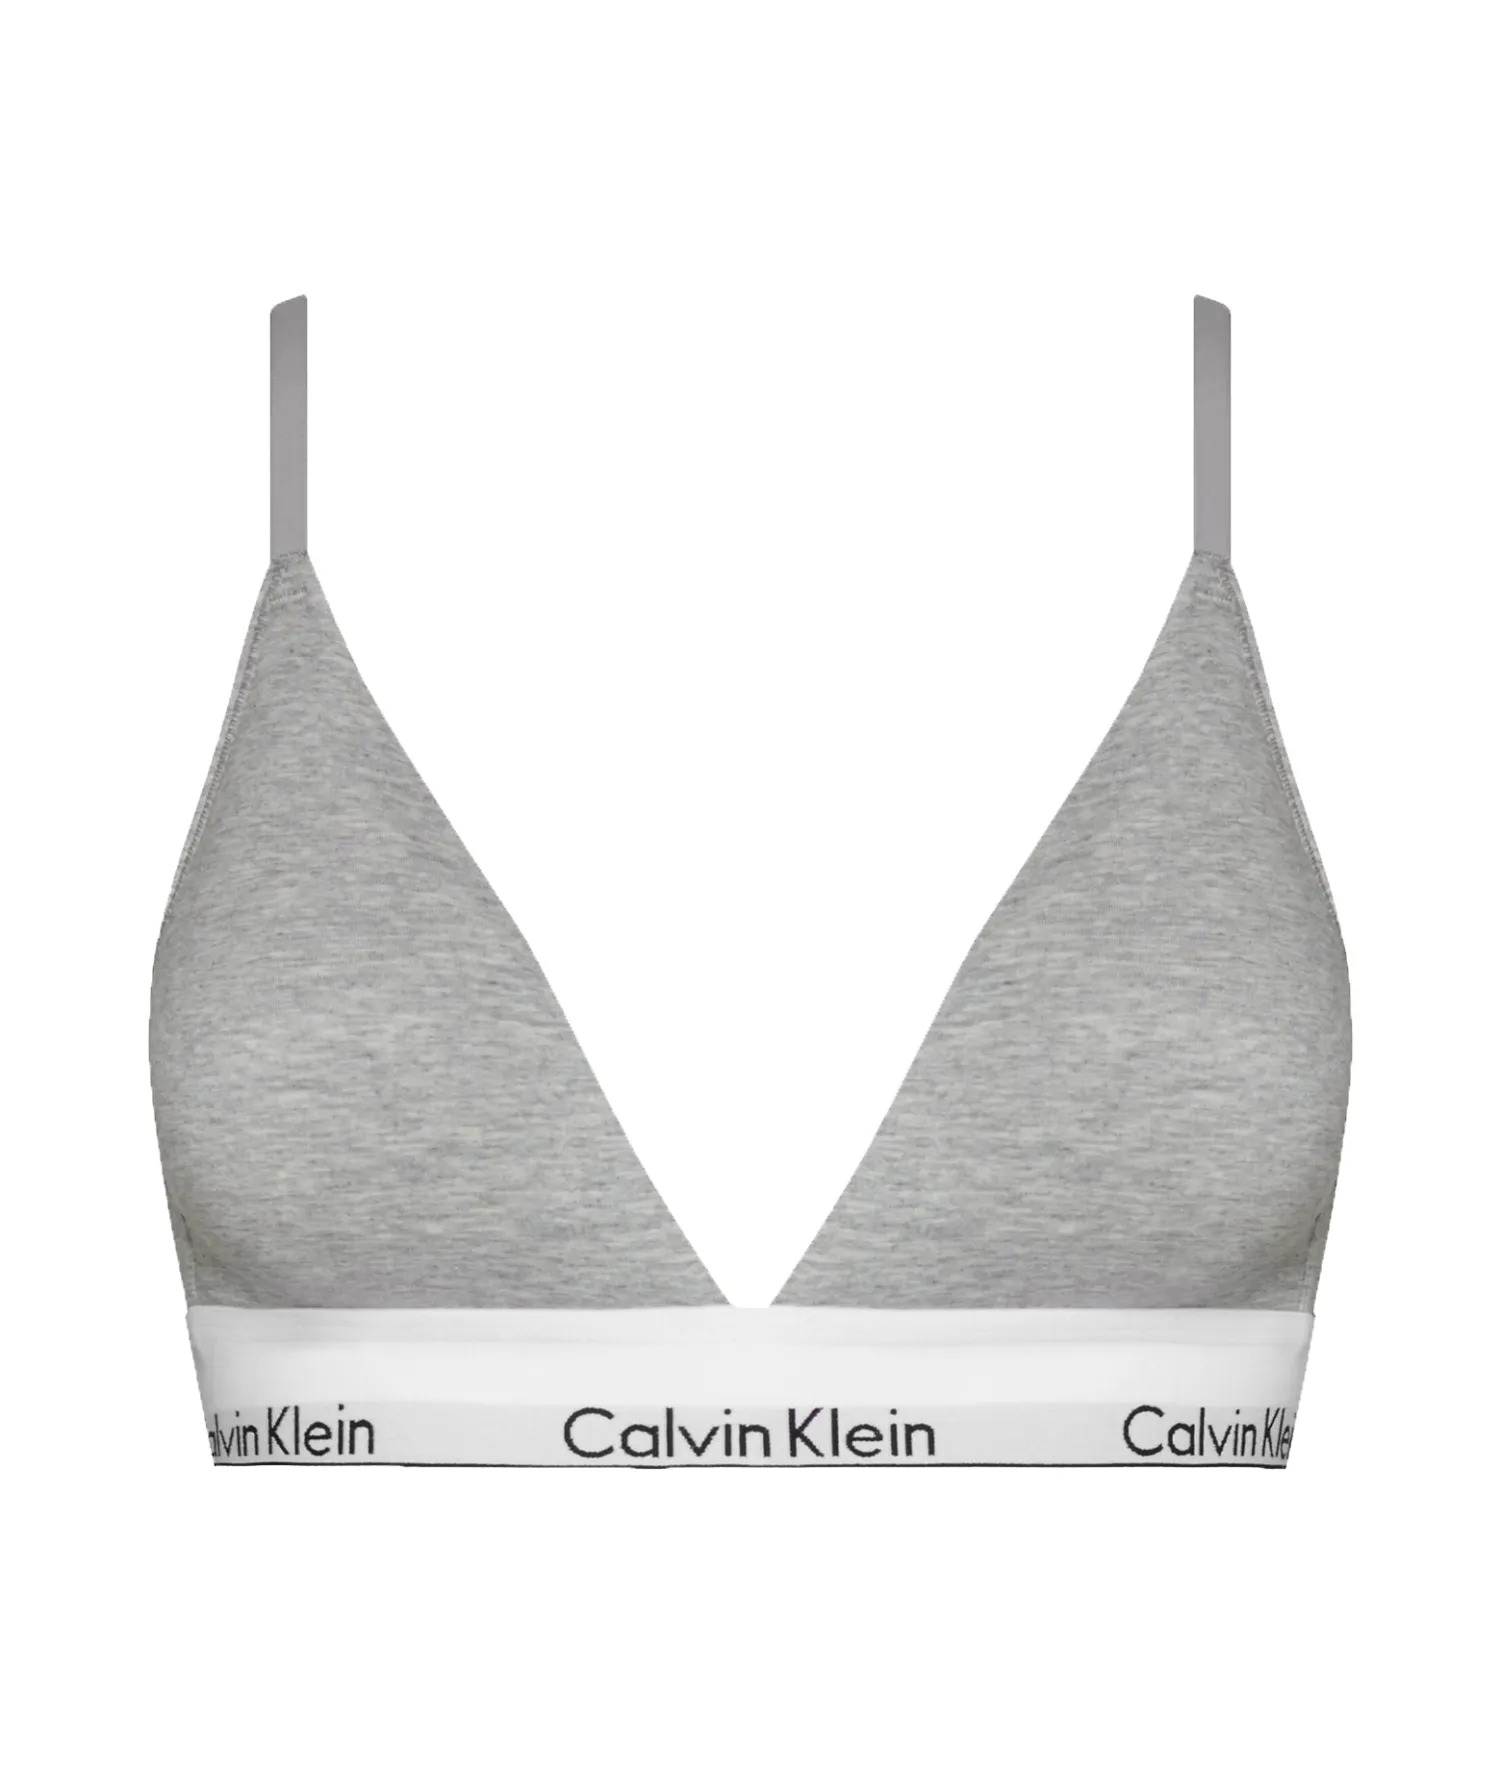 Bras Calvin Klein Modern Cotton Light Lined Bralette Grey Heather